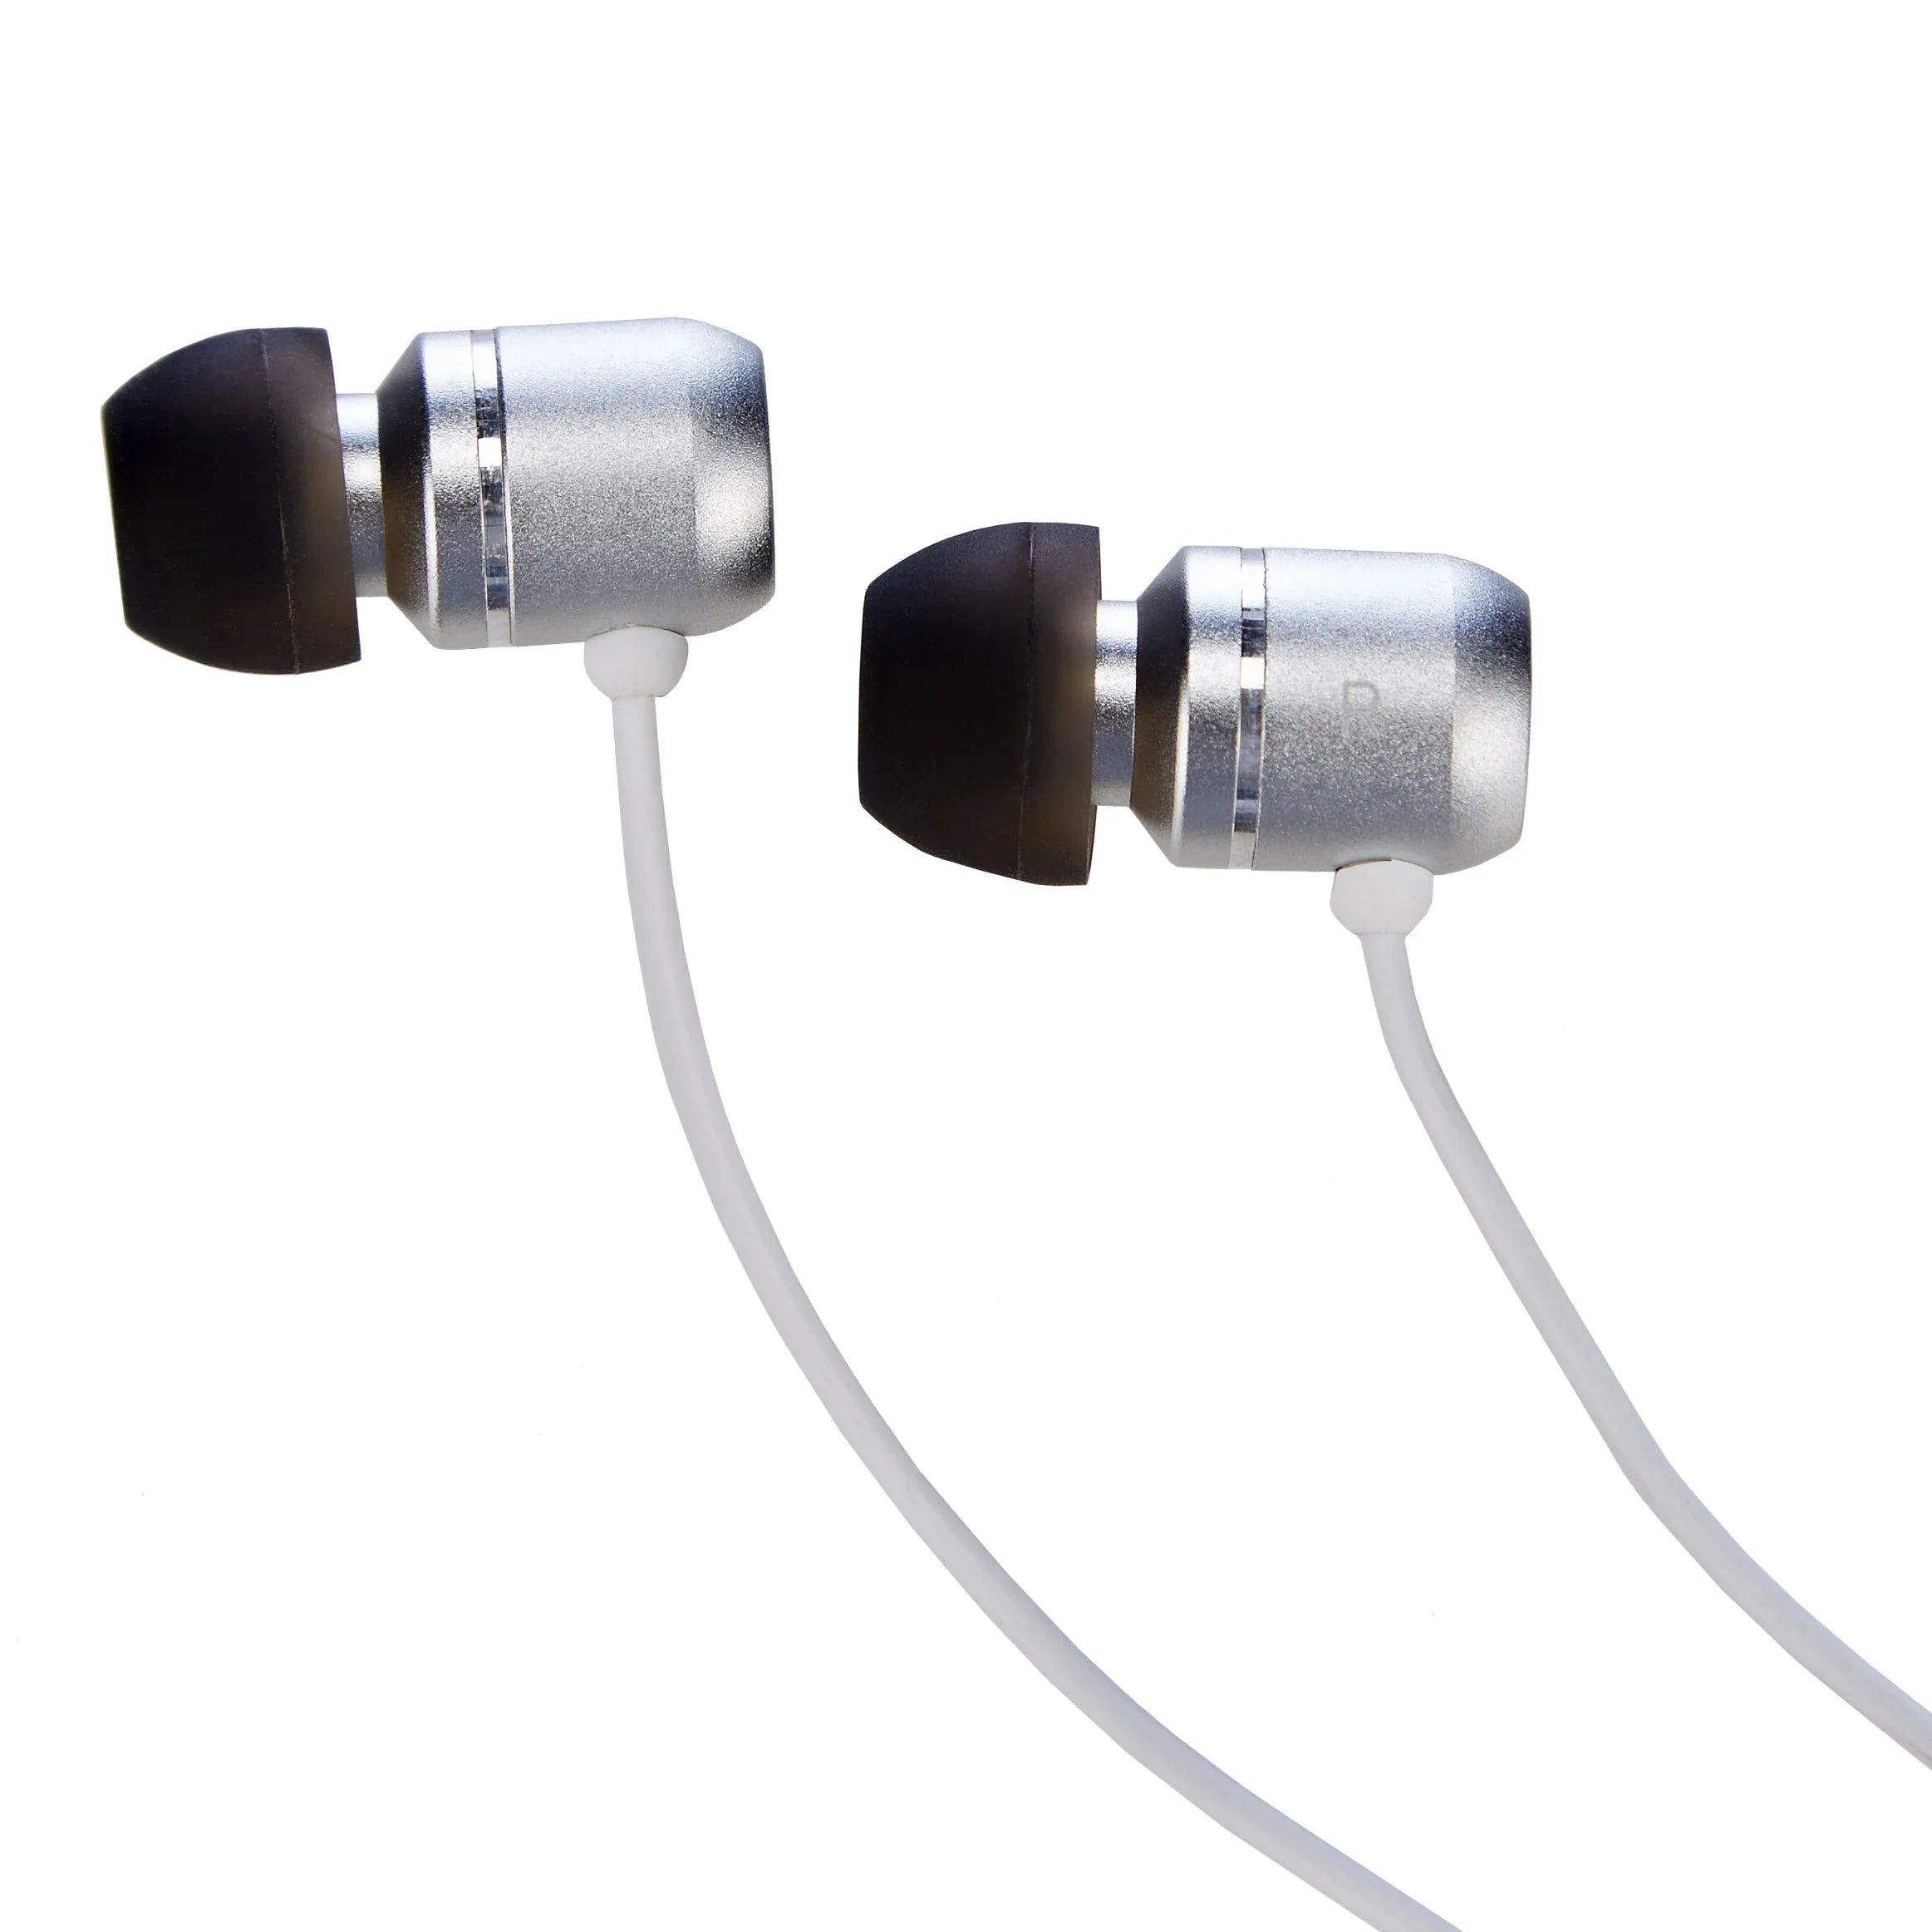 Design Go travel accessories Mobile Control headphones - black